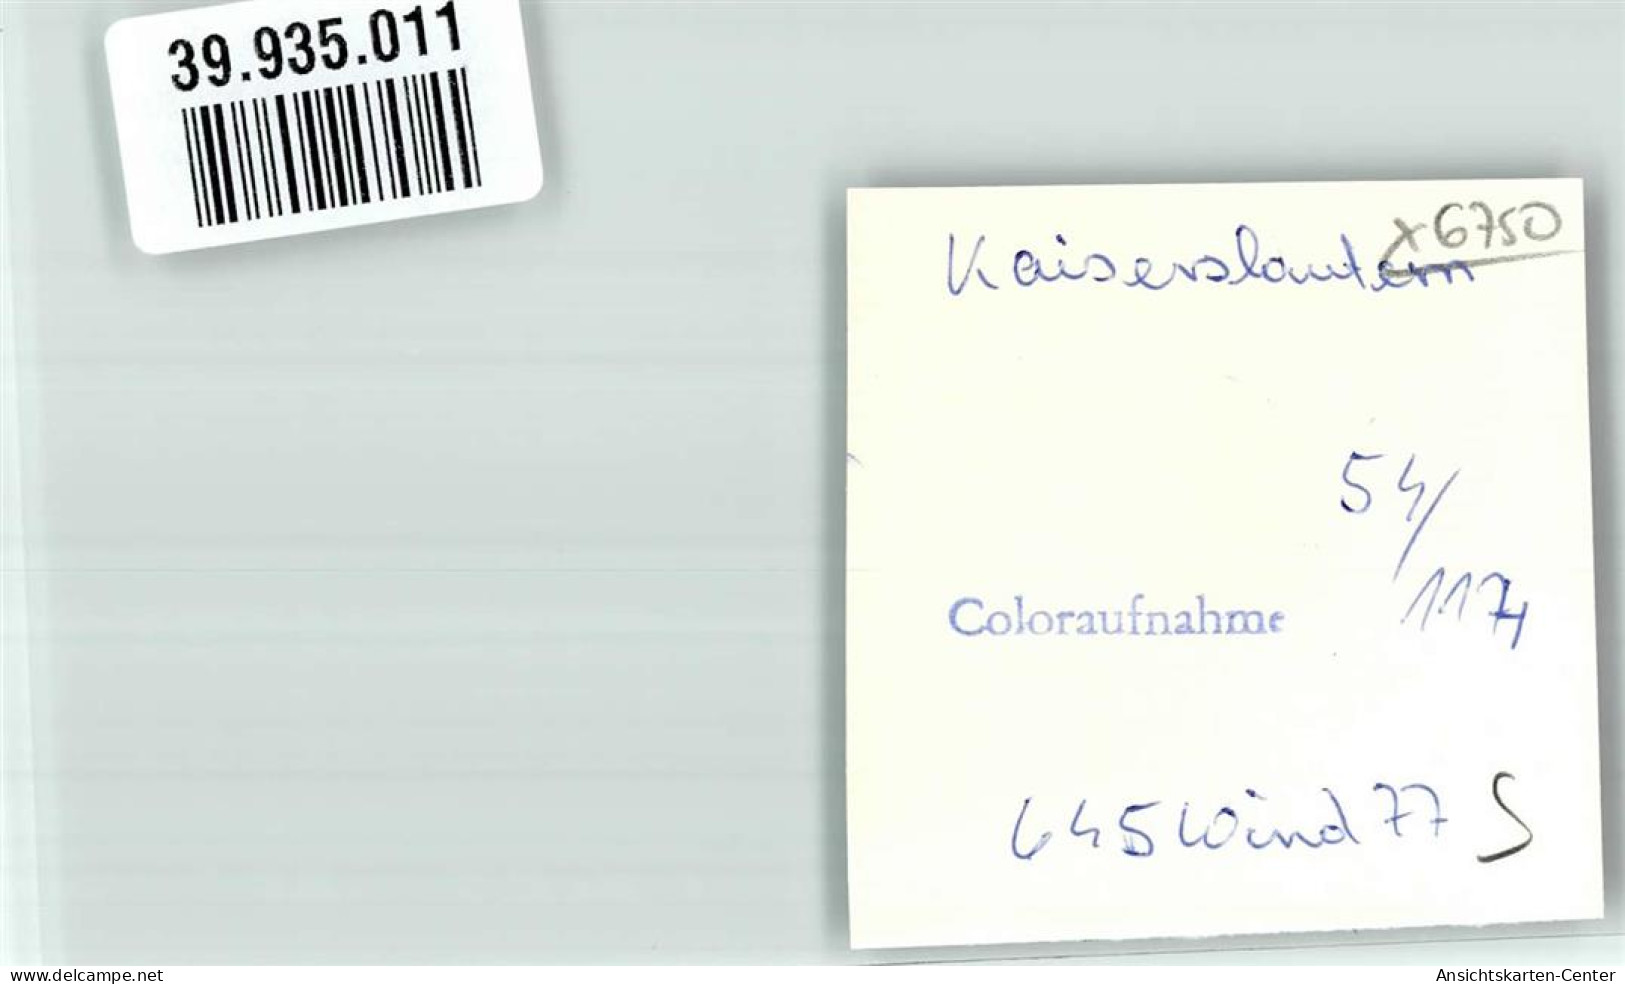 39935011 - Kaiserslautern - Kaiserslautern